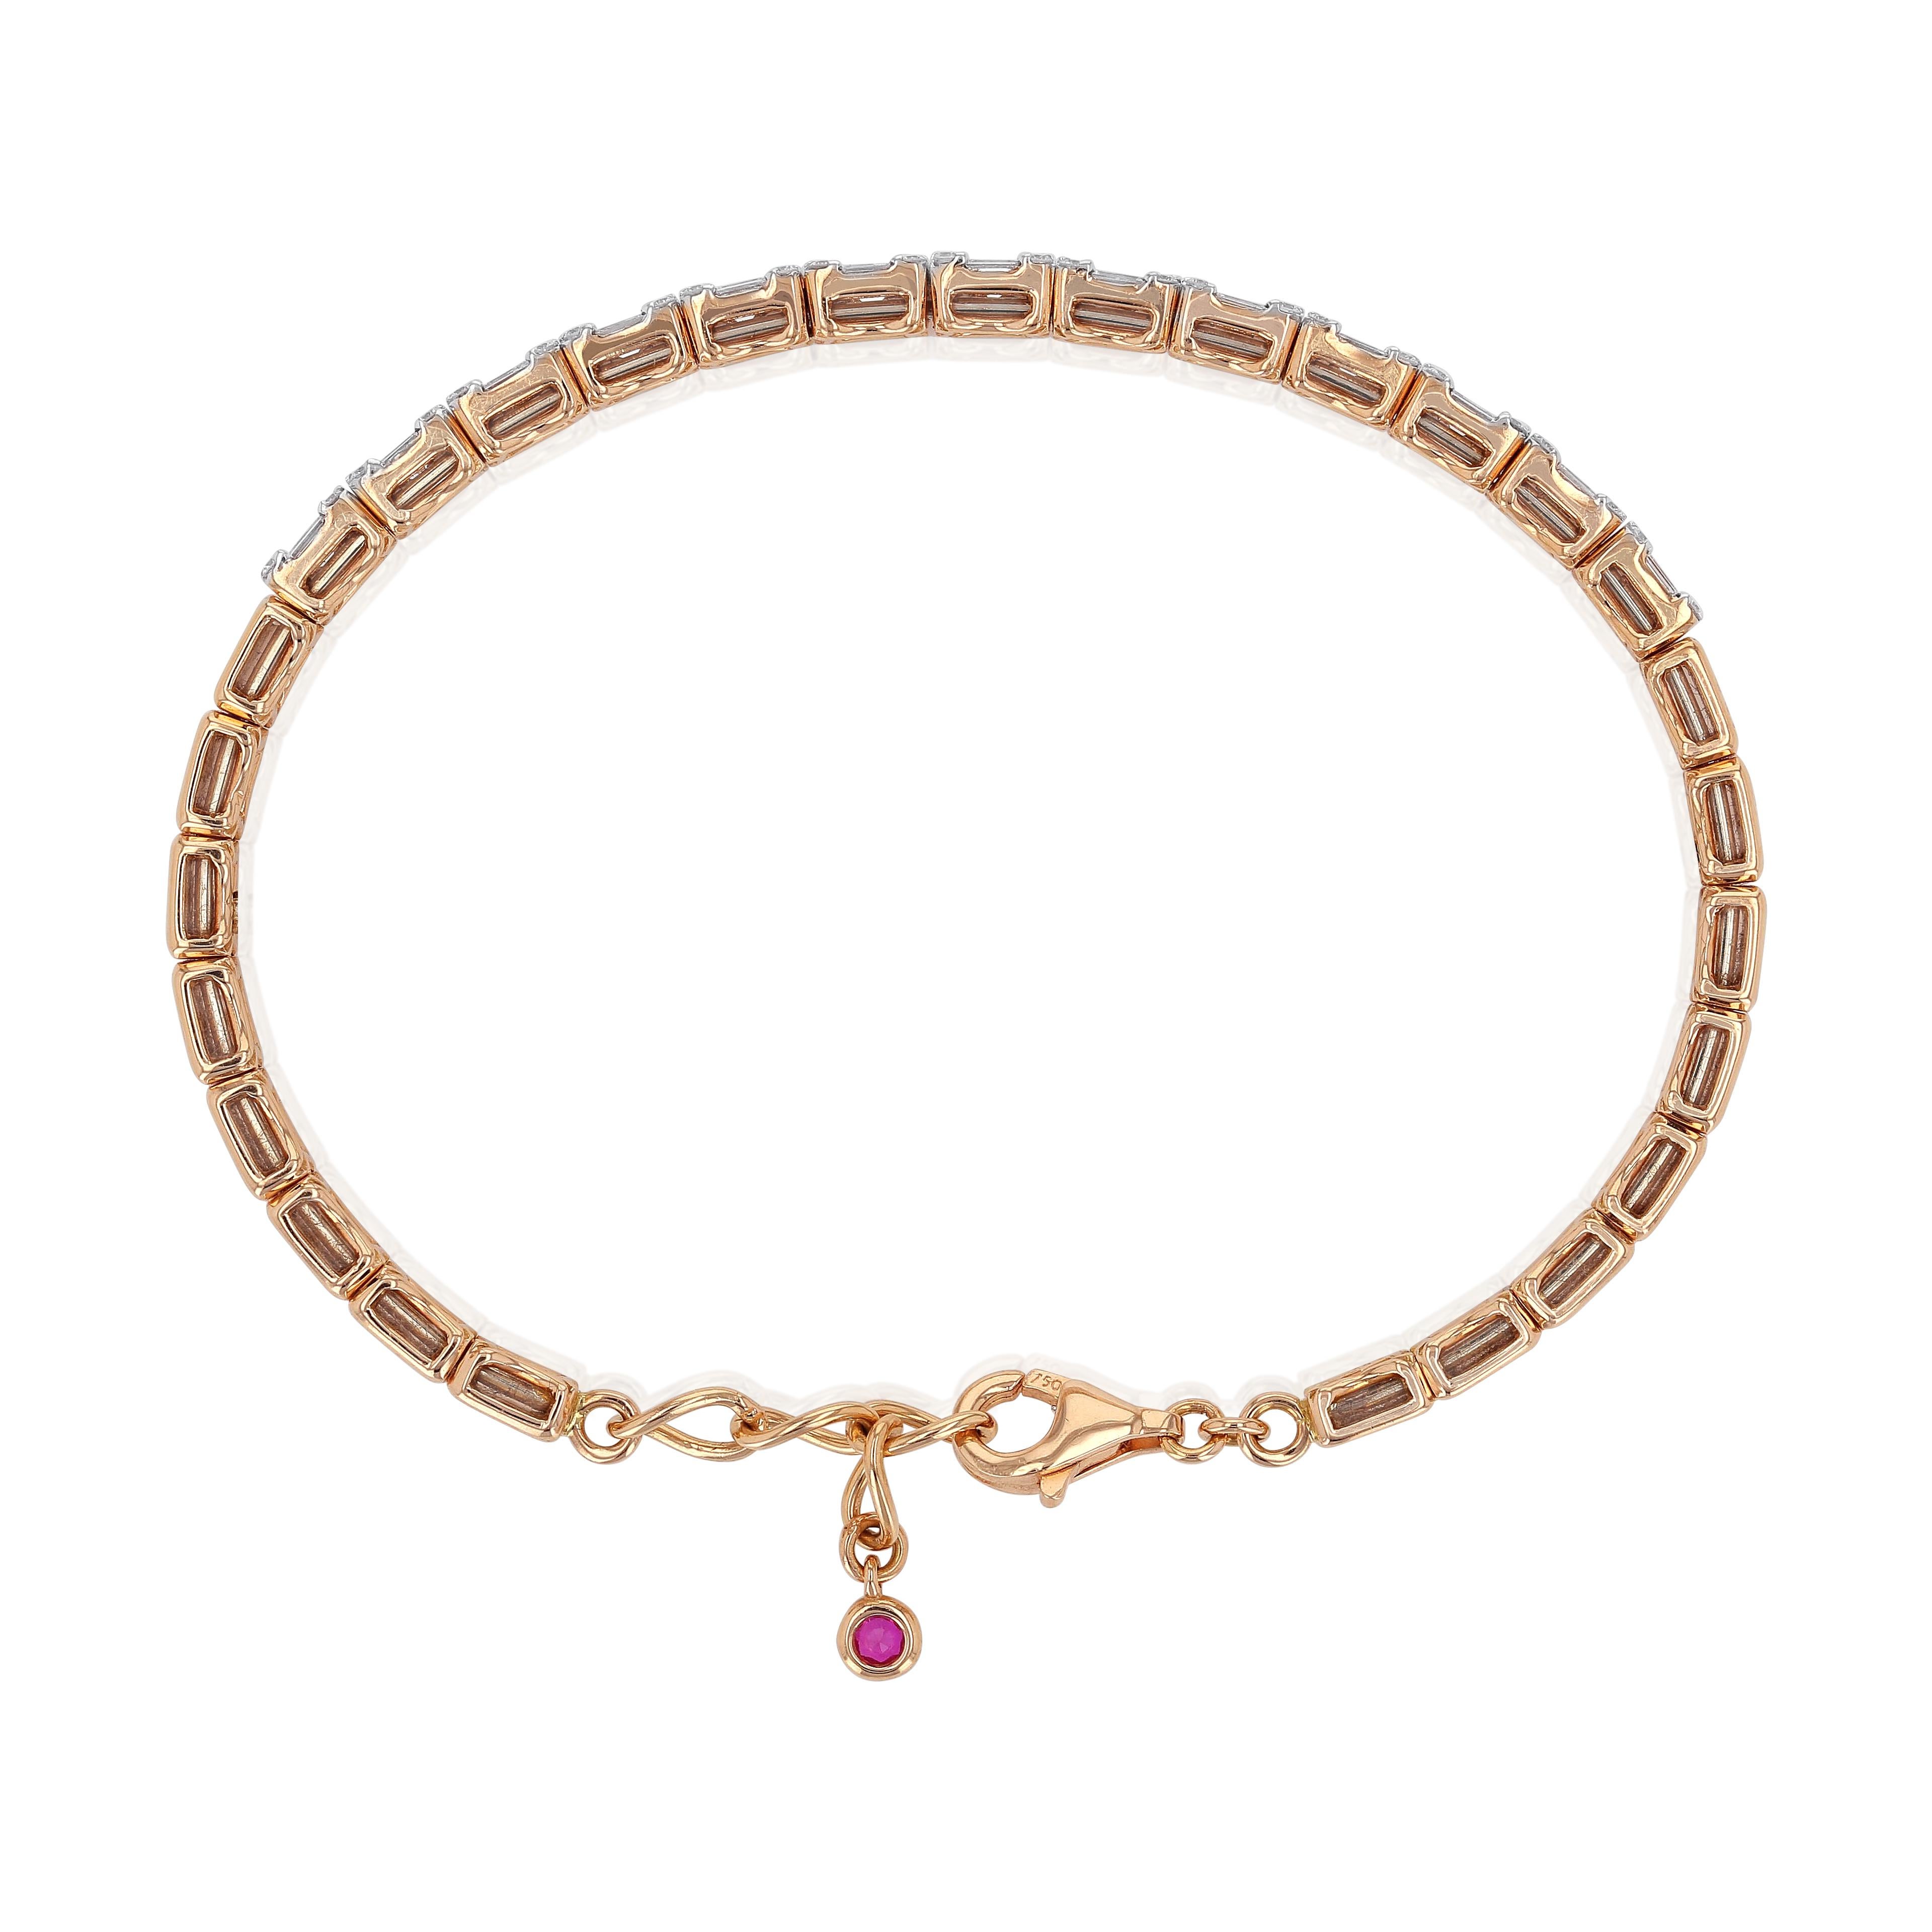 Charmant, simple et élégant bracelet en or rose 18 carats de la marque Amwaj jewelry, avec des diamants ronds et baguettes, qui ajoutent une touche de rêve et d'éclat à cet article. De forme délicate pour ne pas dominer, il met parfaitement en